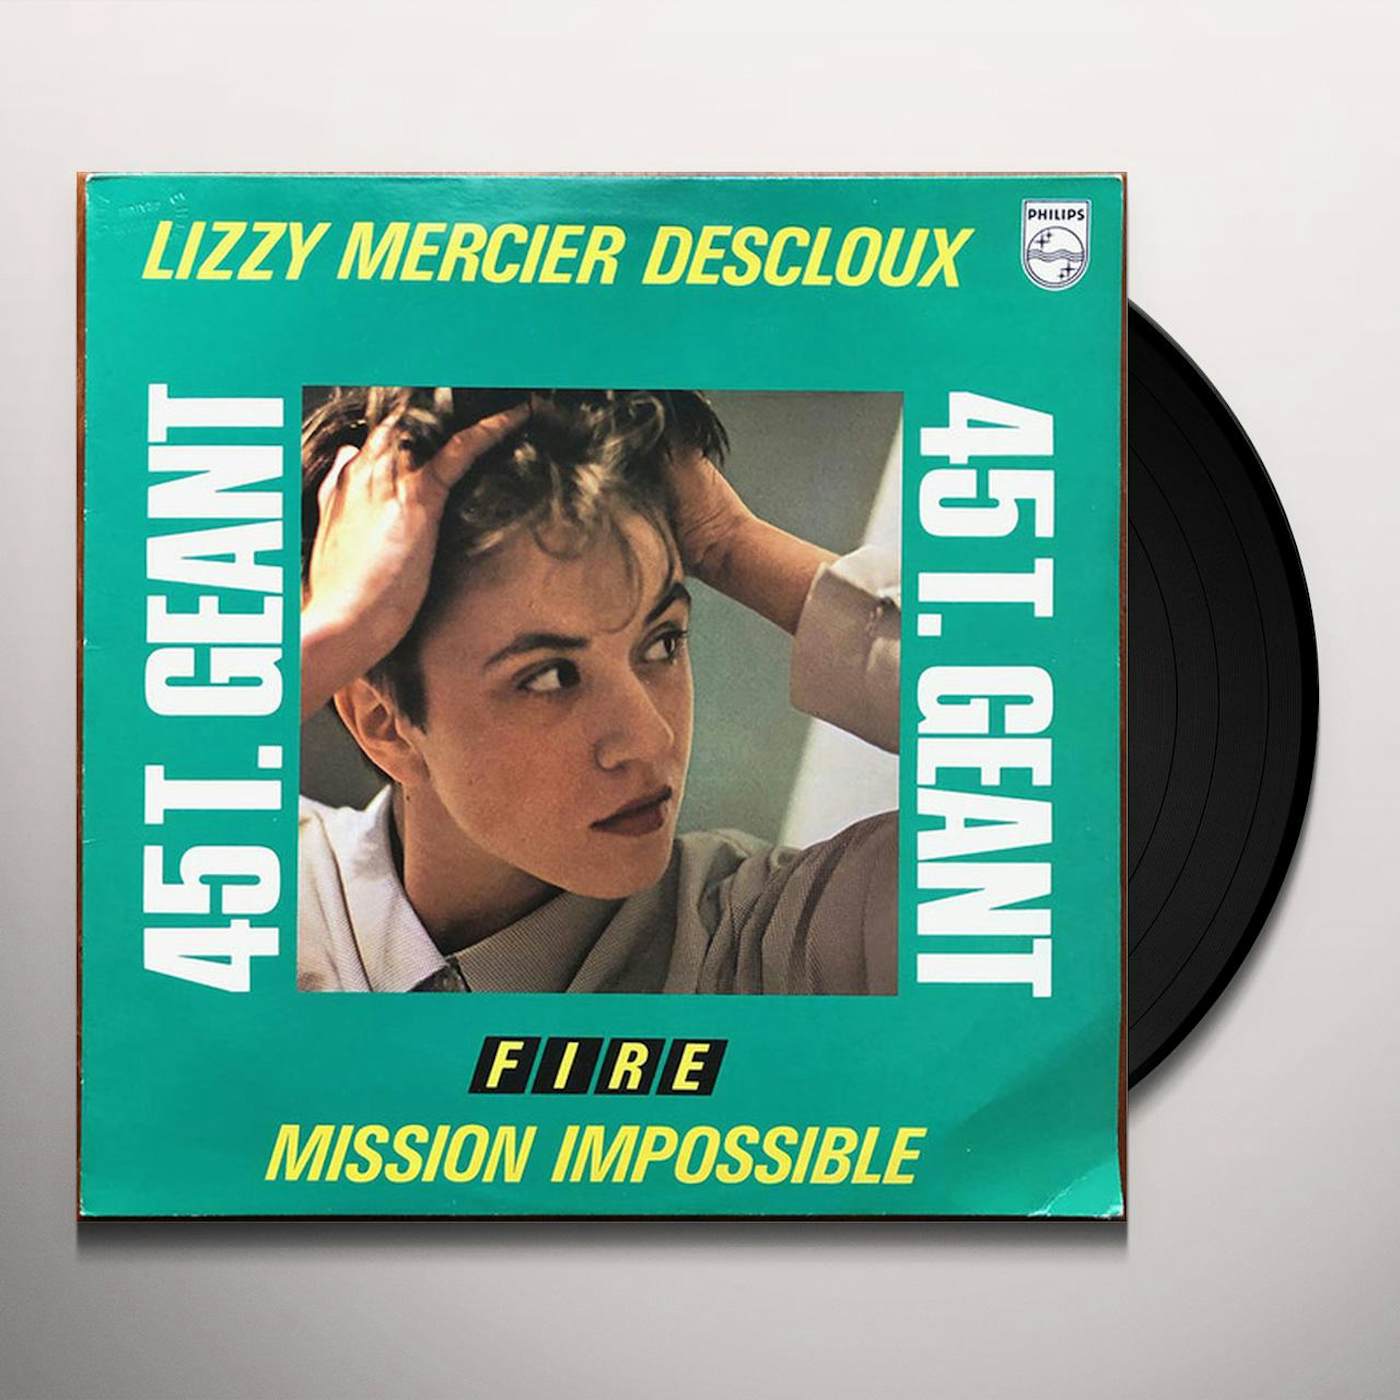 Lizzy Mercier Descloux Mission Impossible Vinyl Record